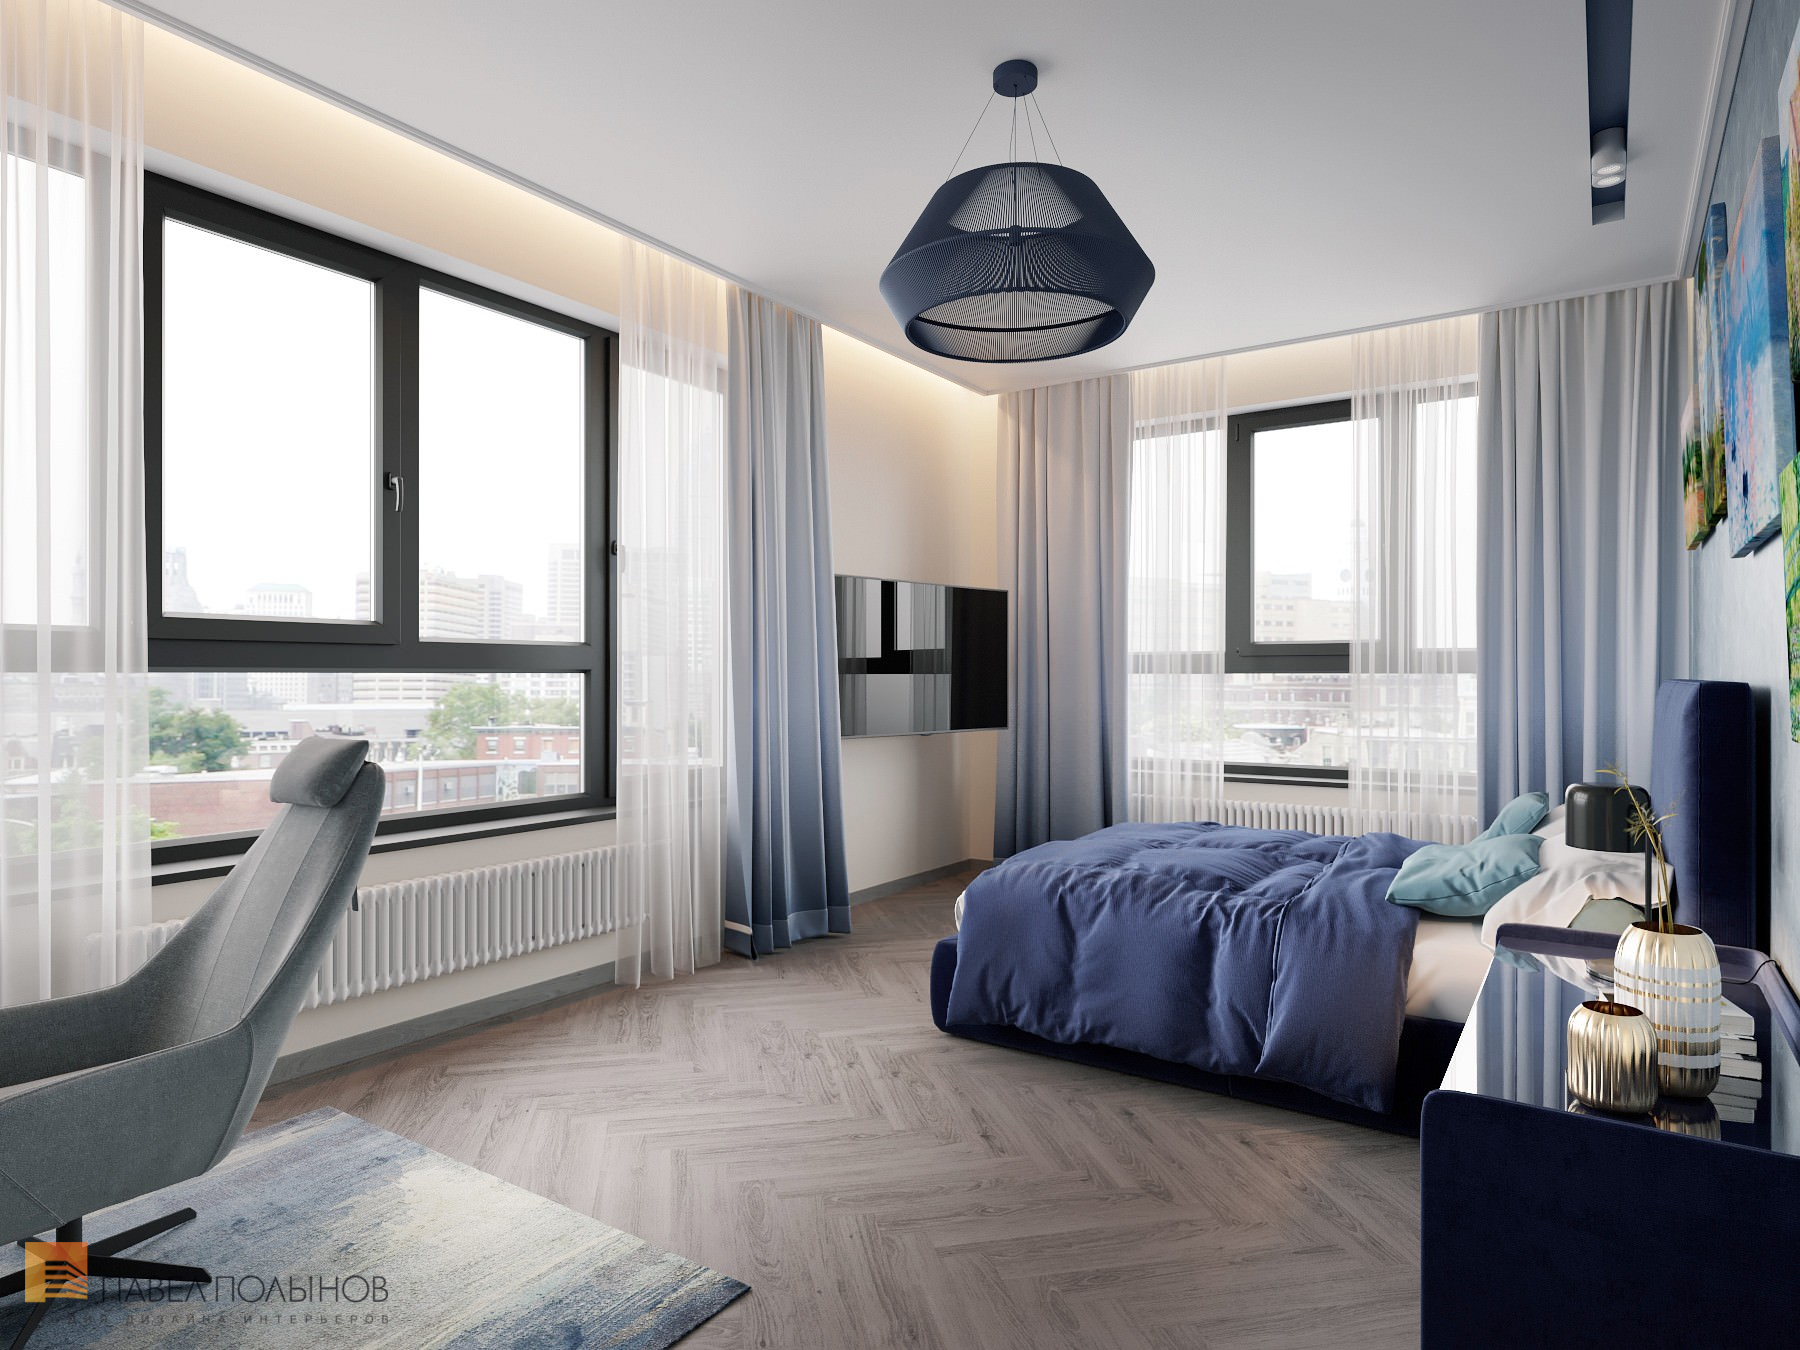 Фото дизайн спальни из проекта «Интерьер квартиры в скандинавском стиле, ЖК «Silver», 146 кв.м.»